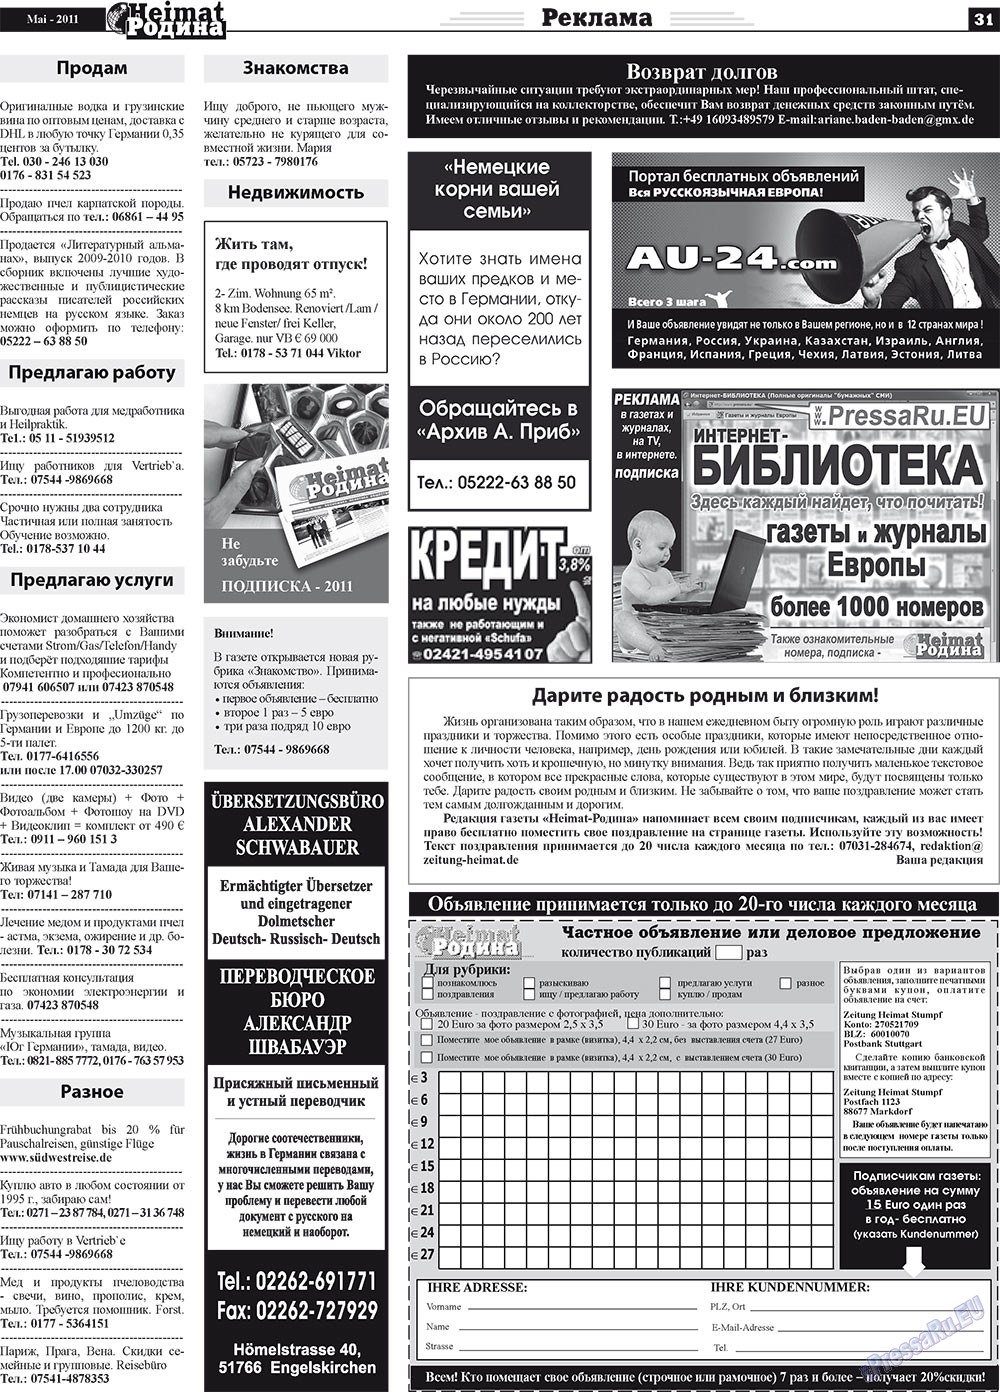 Heimat-Родина (газета). 2011 год, номер 5, стр. 31